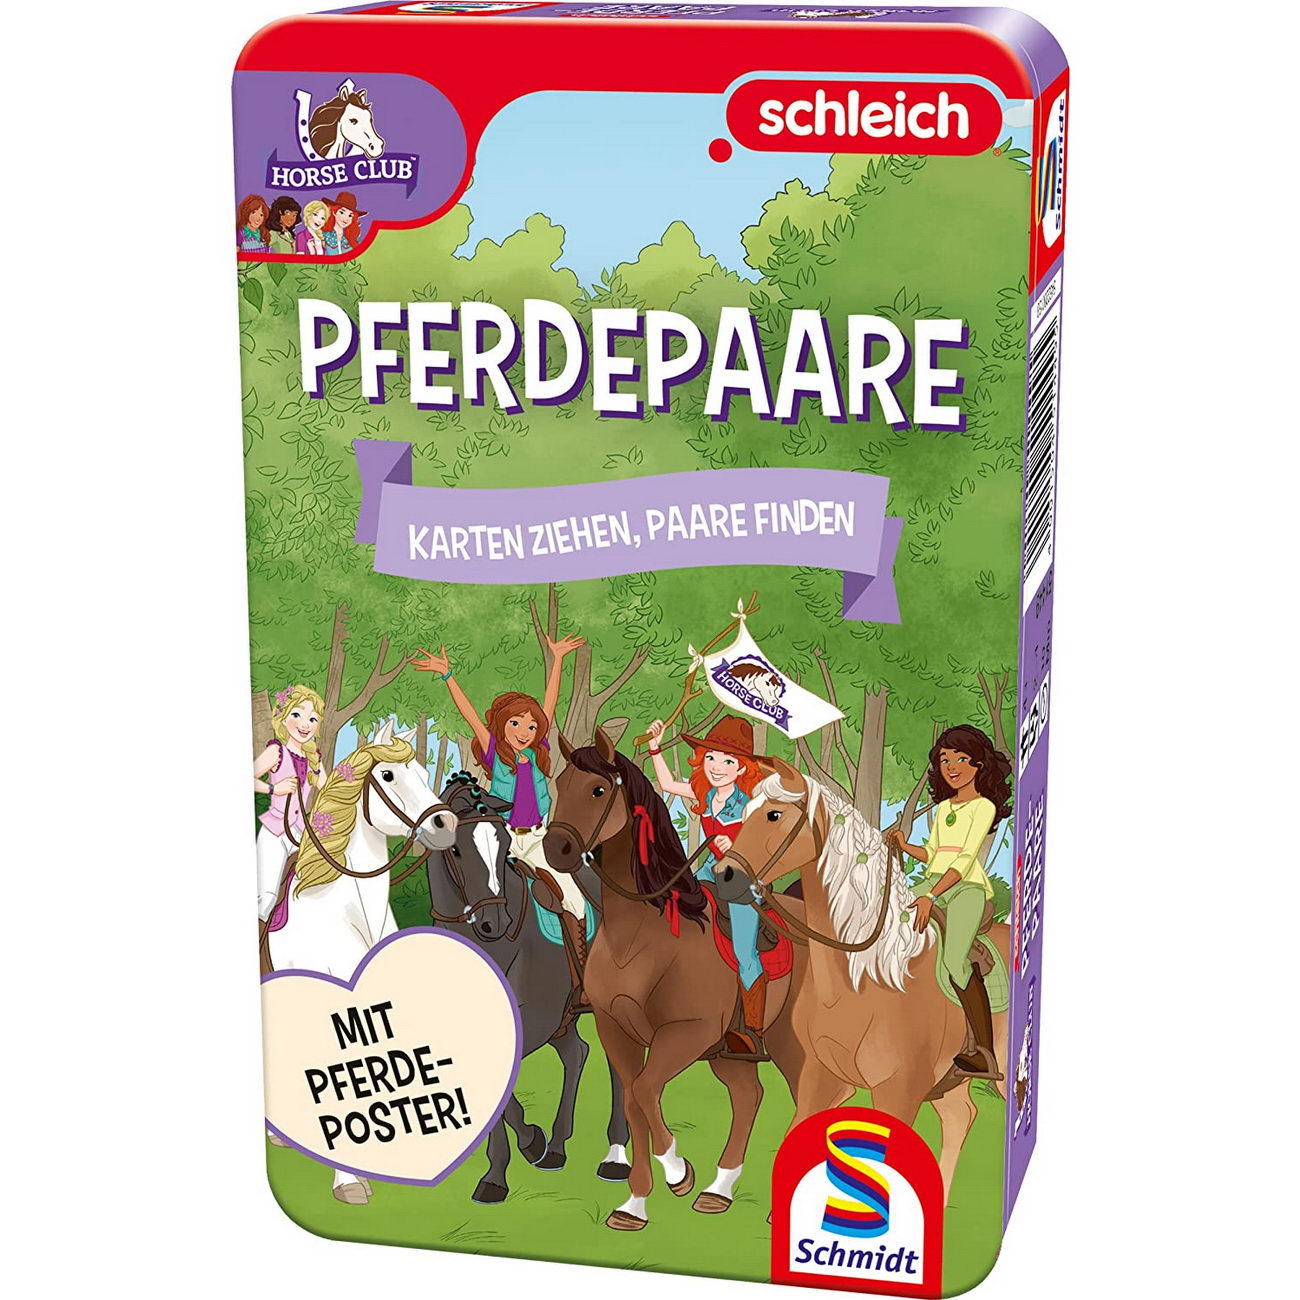 Pferdepaare - Schleich Reisespiel Metalldose (Schmidt 51449)